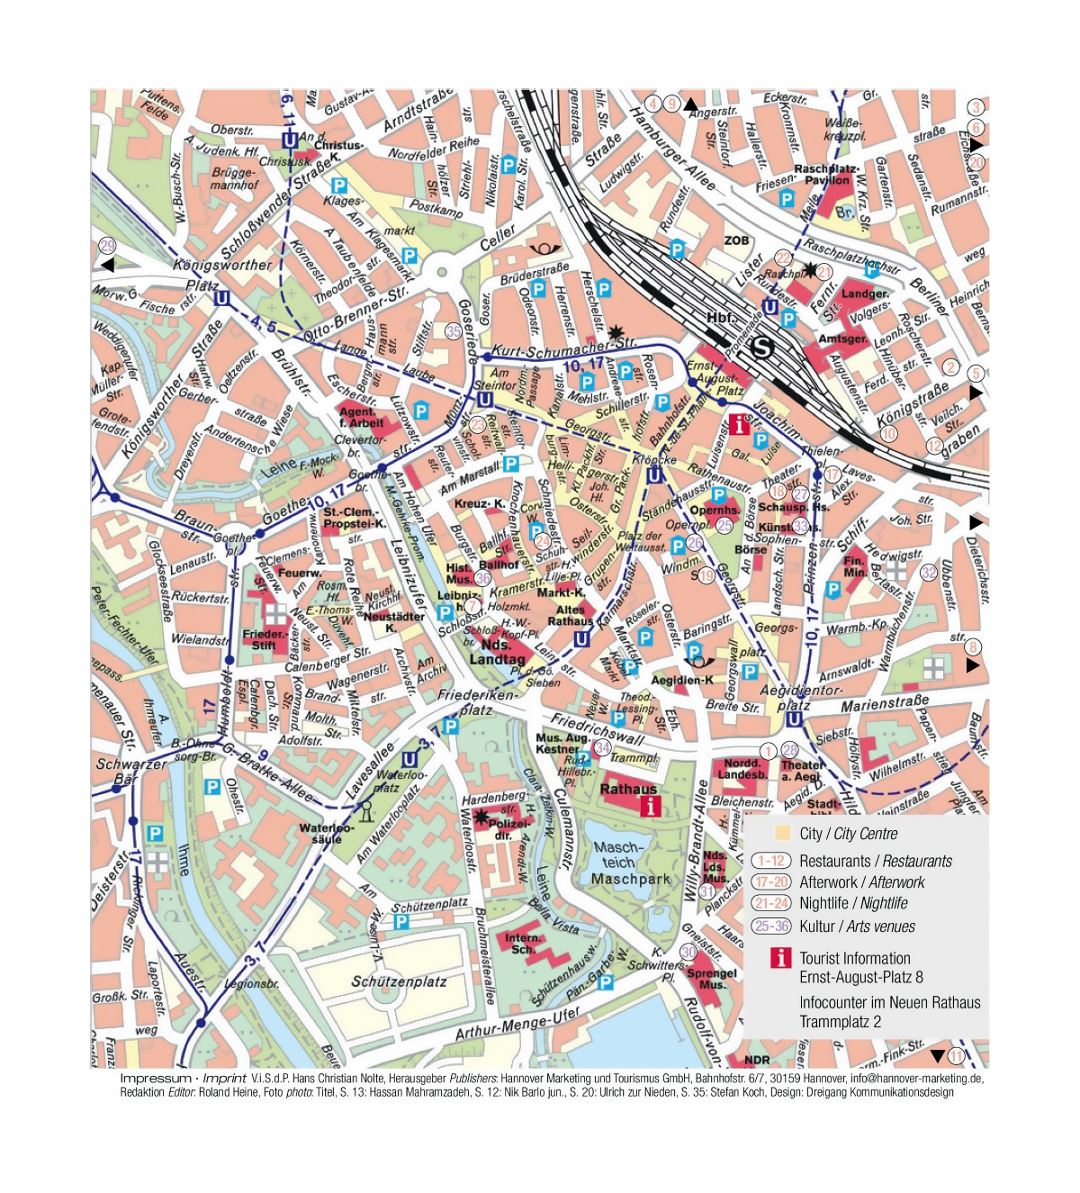 Mapa turístico detallada de la parte central de la ciudad de Hannover